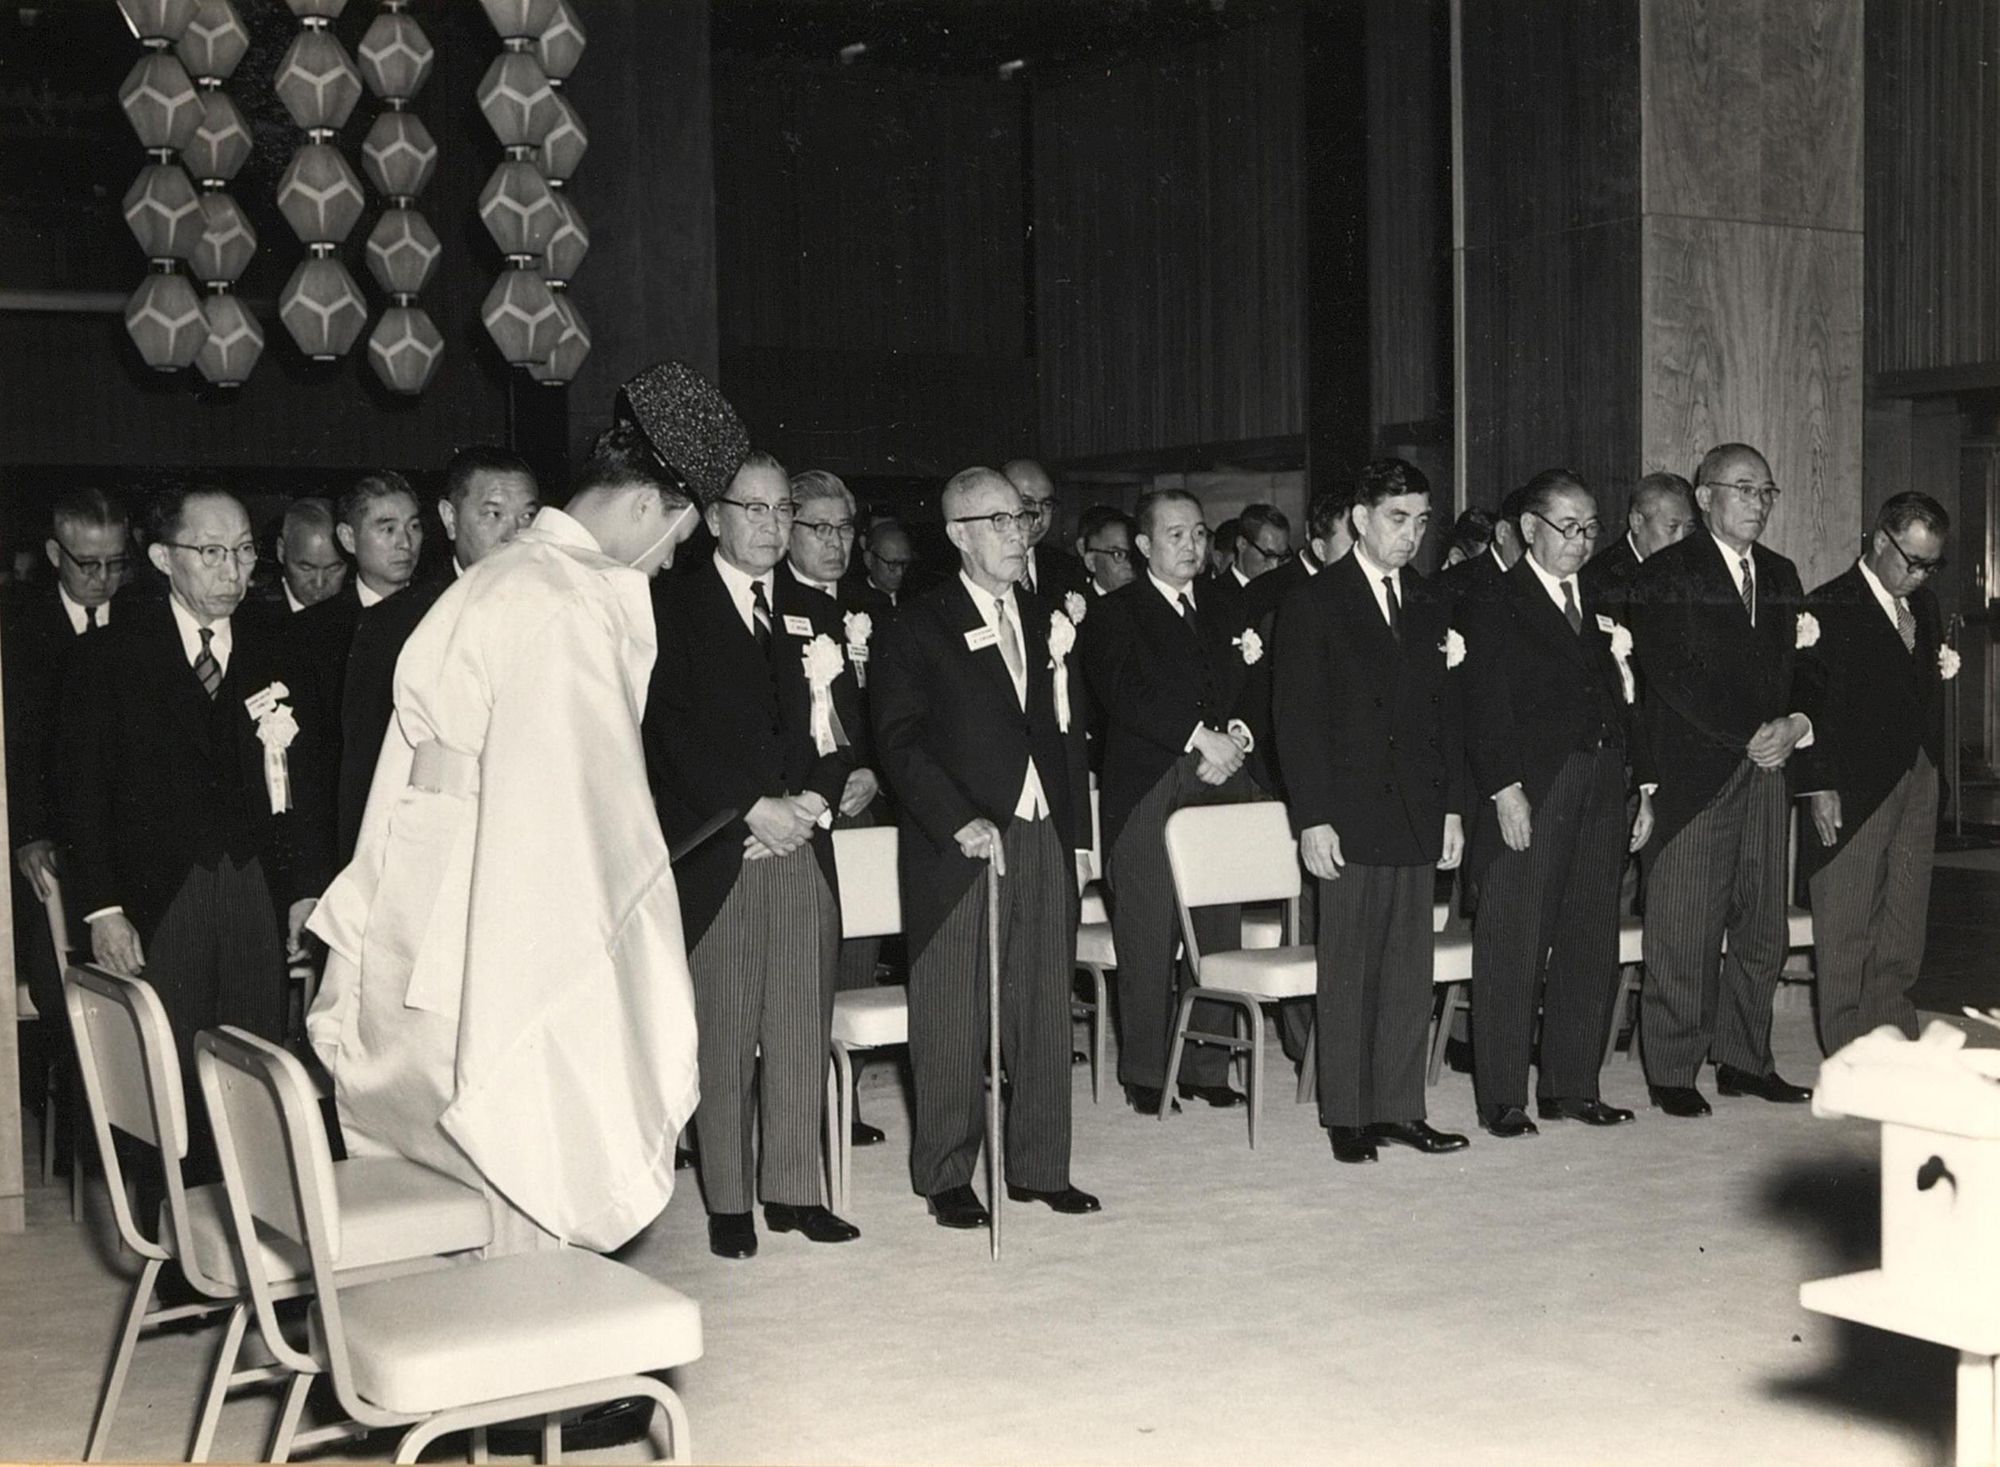 1962年の開業式典の様子。中央が大倉喜七郎、その左が野田岩次郎、右にいるのが谷口吉郎。